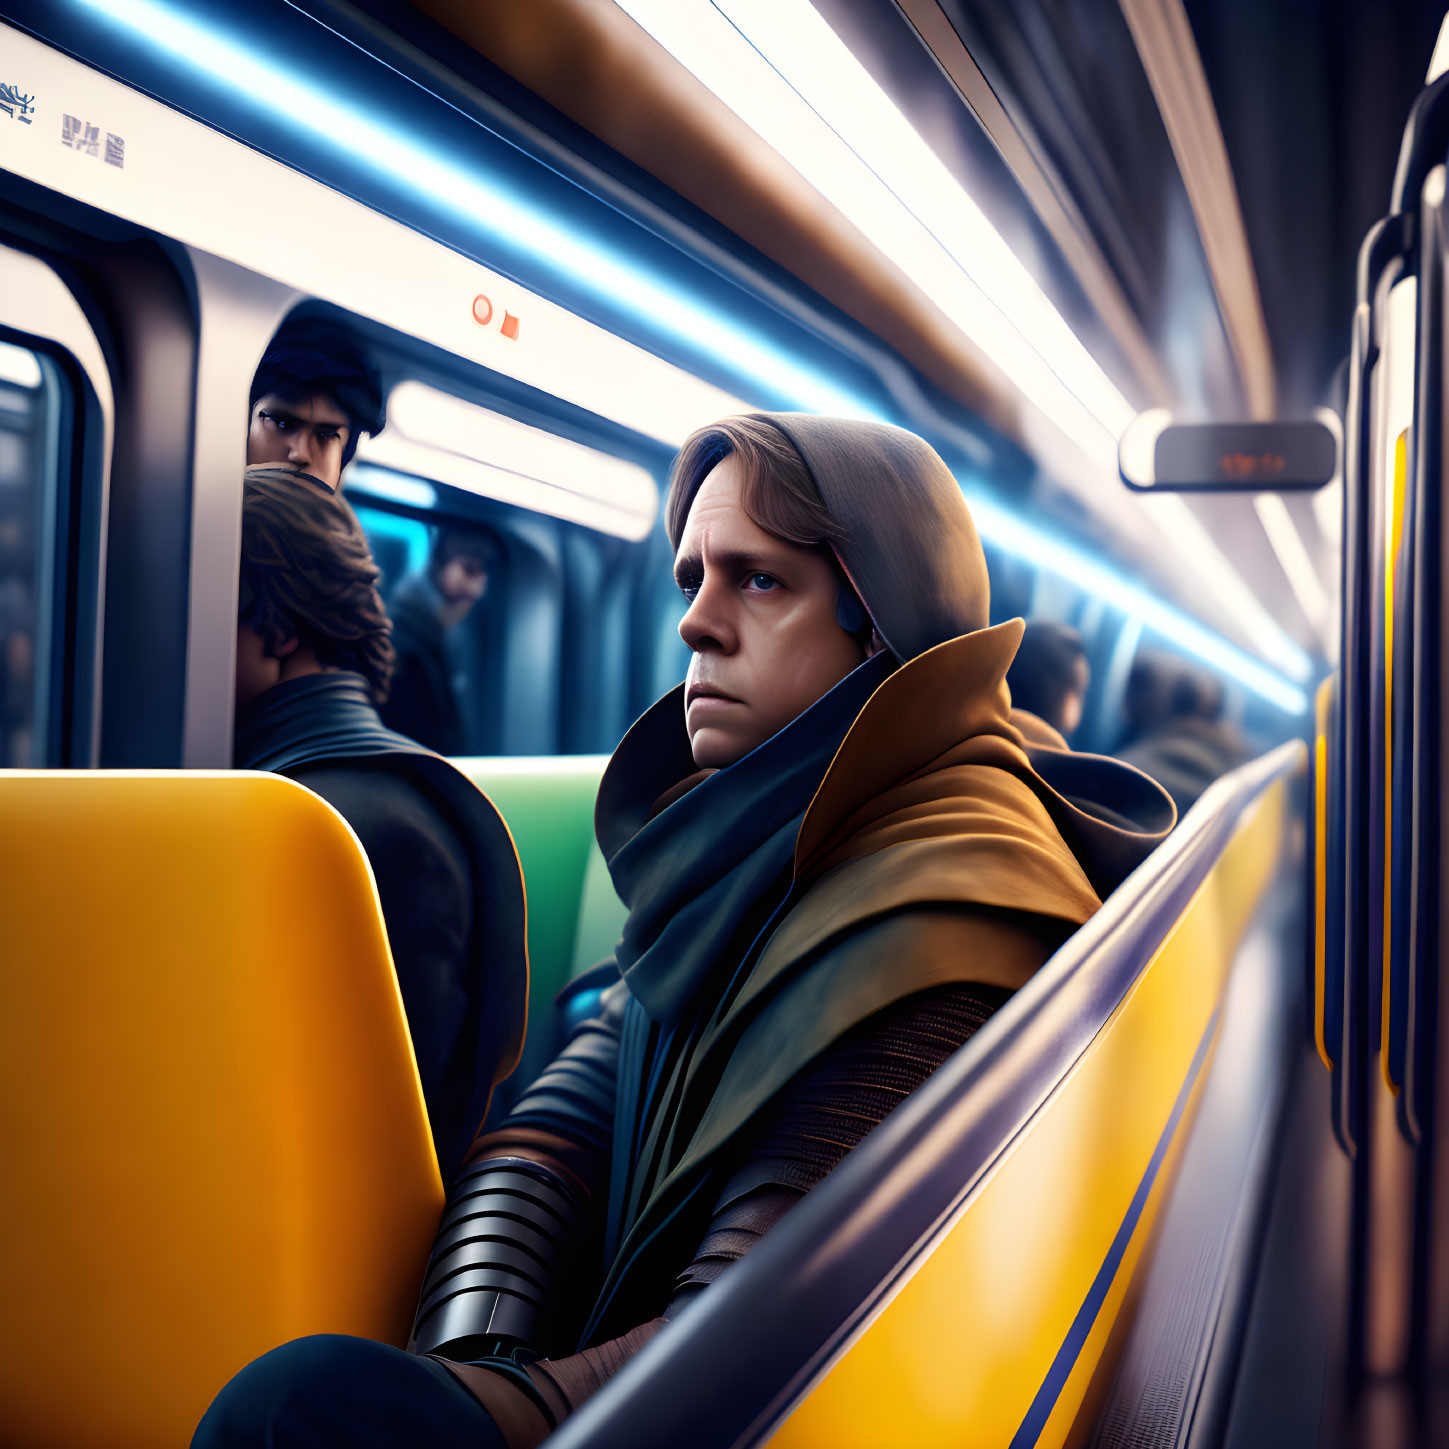 Luke Skywalker in a metro car